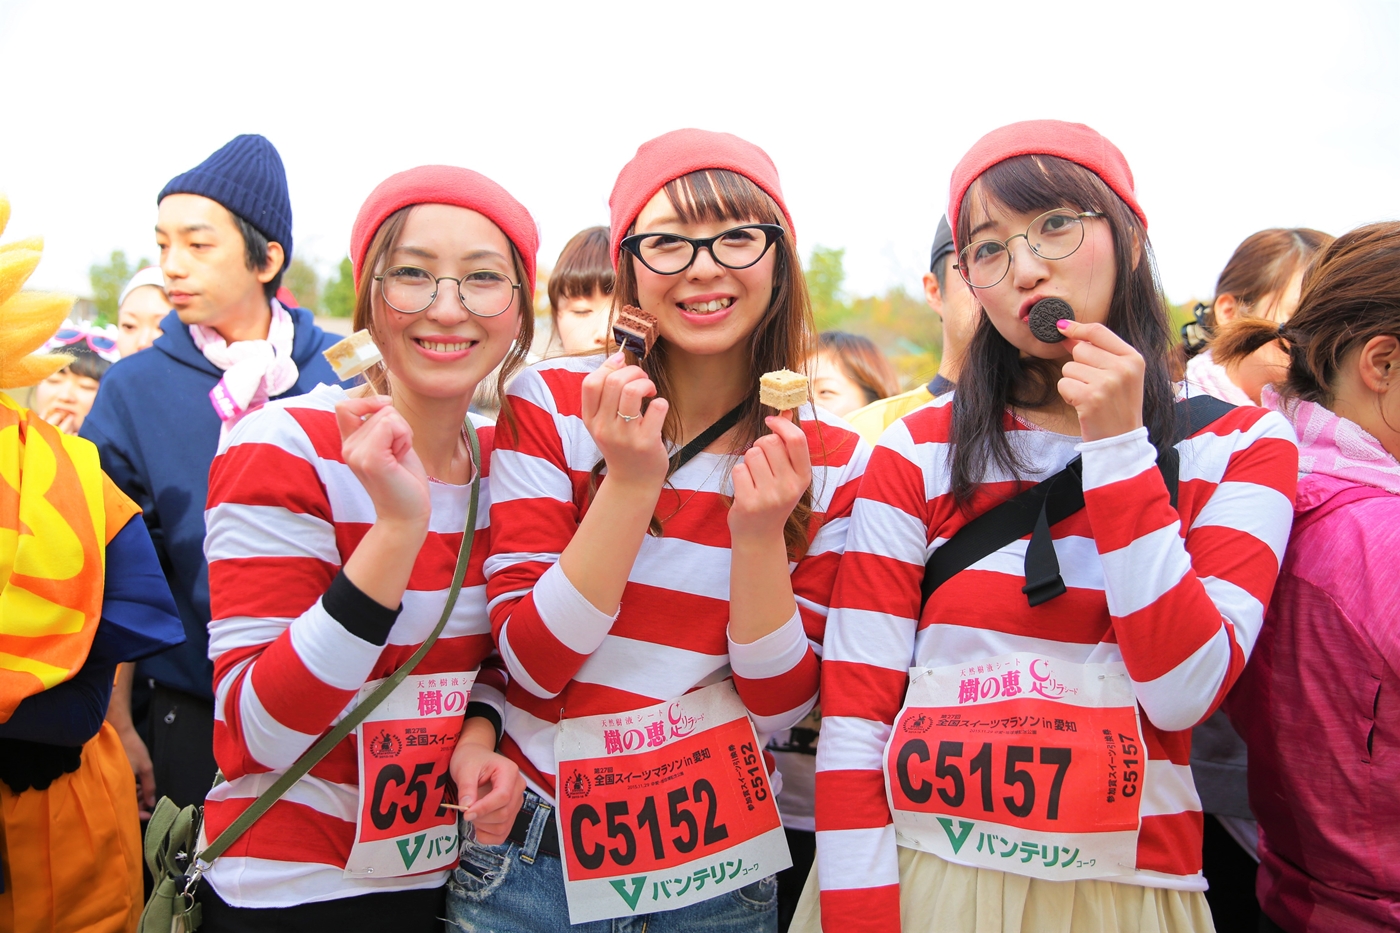 11月開催 甘い幸せいっぱいの大人気イベント スイーツマラソン In 愛知 Pr 日刊kelly 名古屋の最新情報を毎日配信